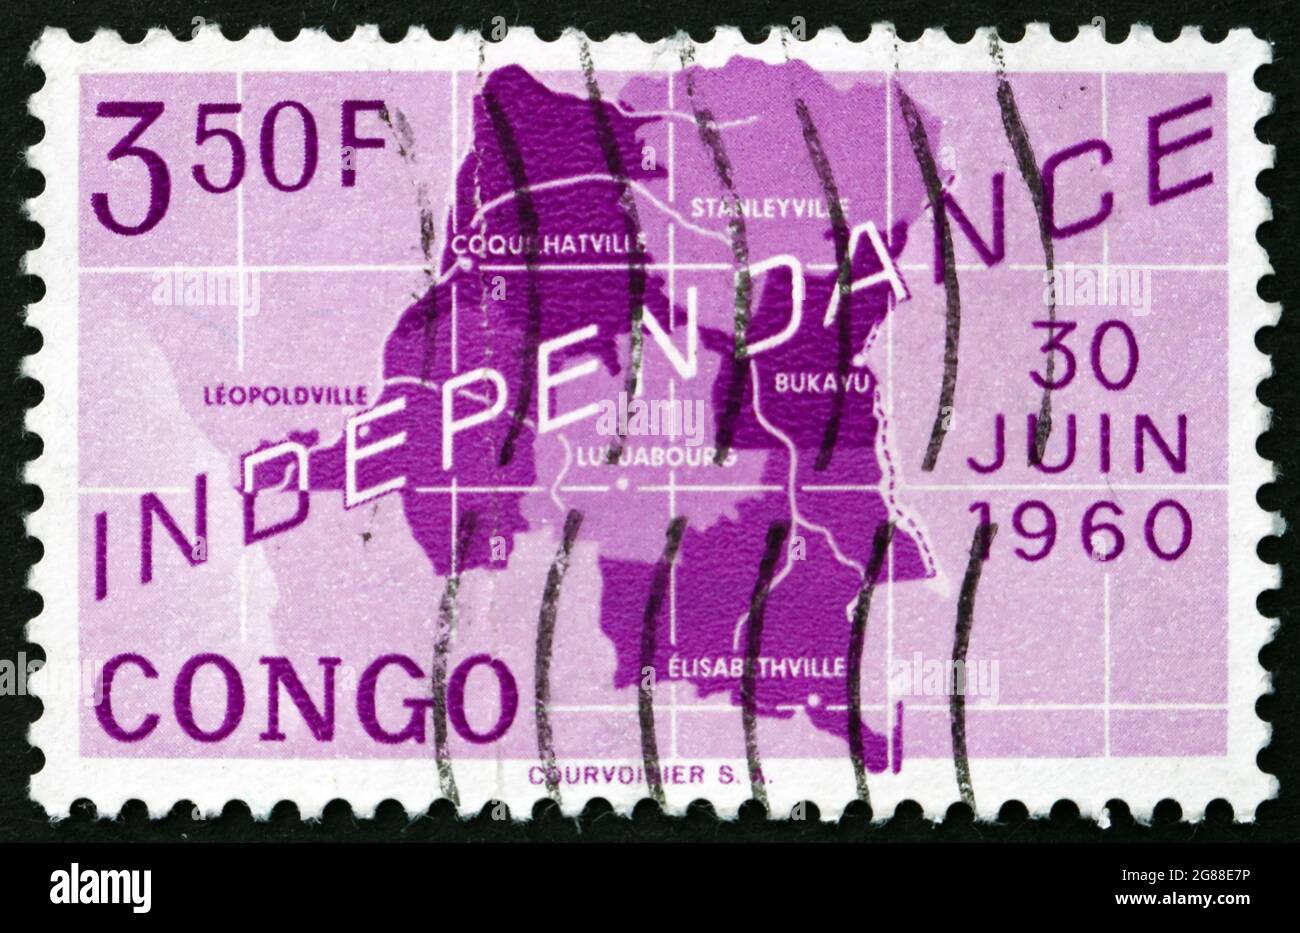 CONGO - VERS 1960: Un timbre imprimé au Congo montre la carte du Congo, l'indépendance du Congo, vers 1960 Banque D'Images